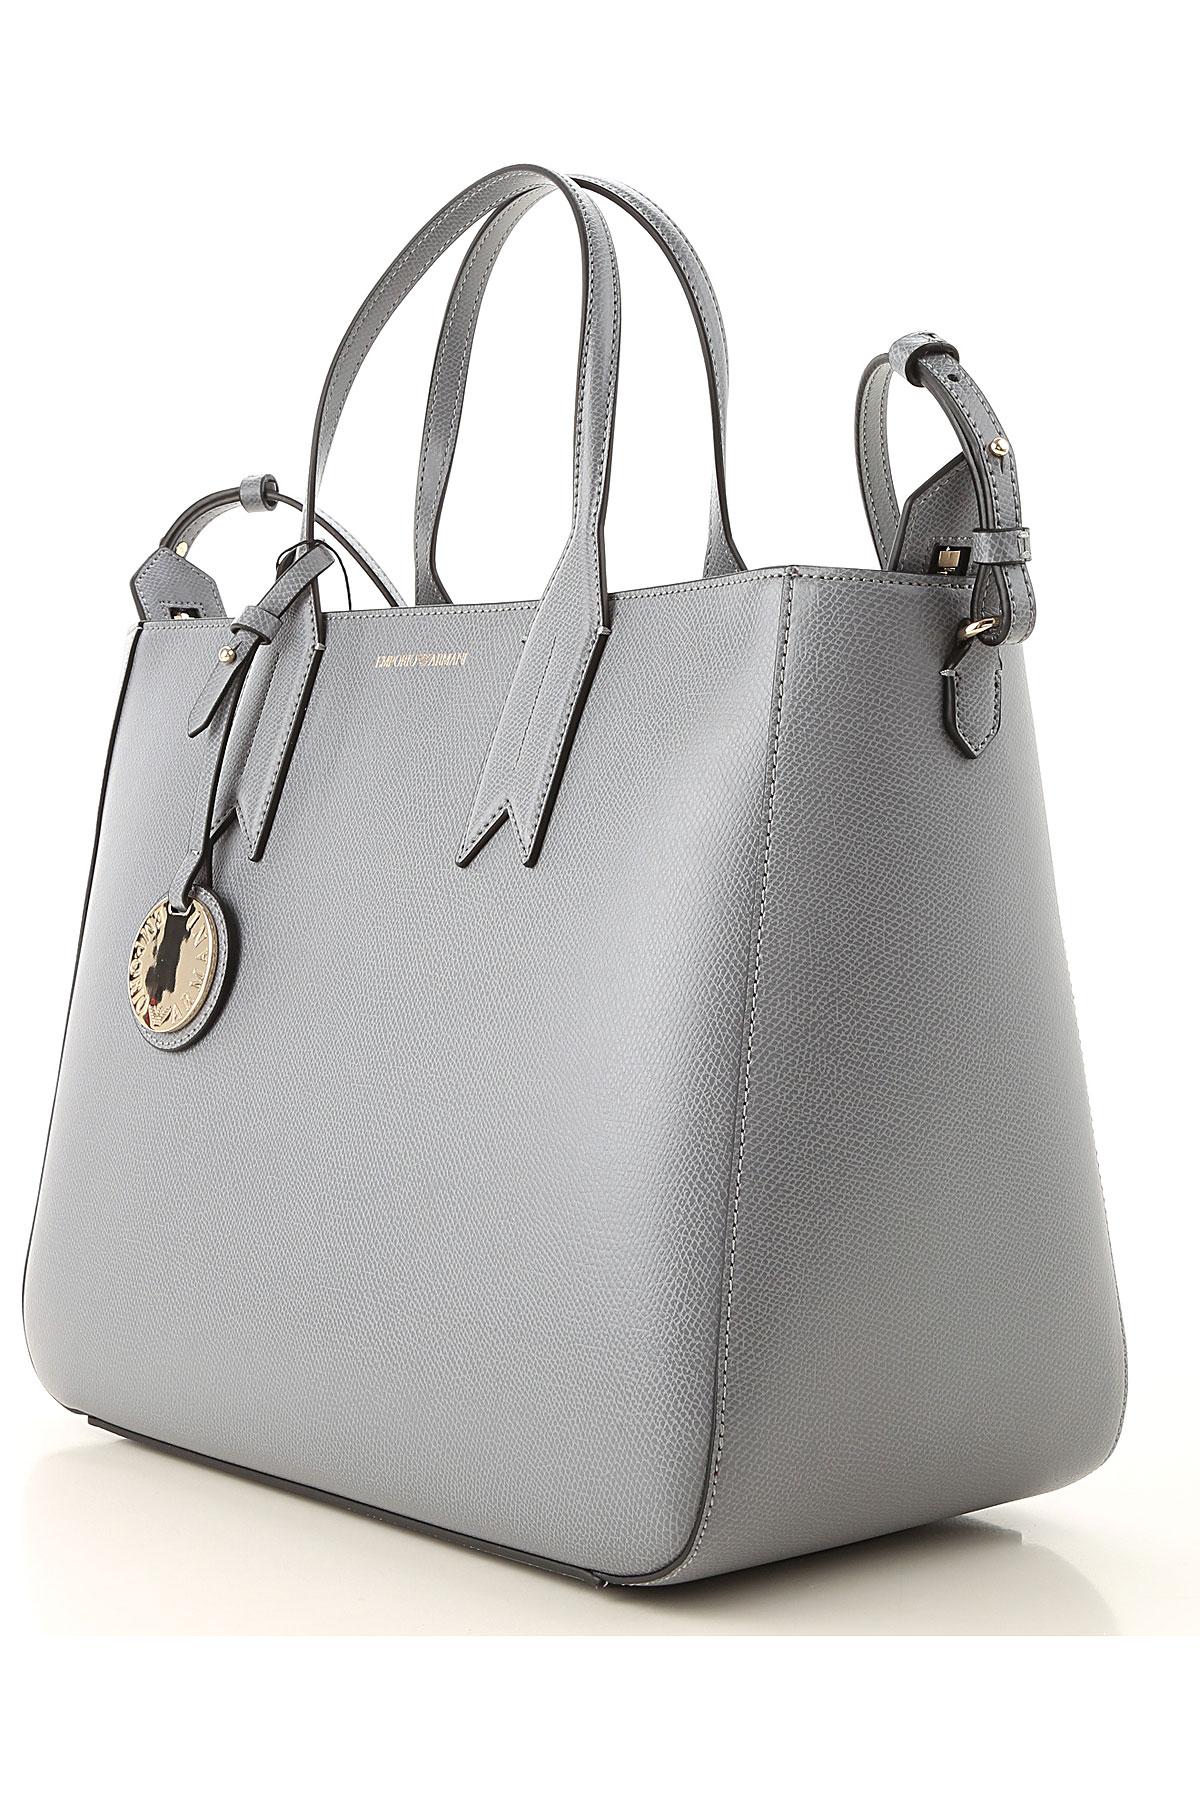 Emporio Armani Tote Bag On Sale in Gray - Lyst